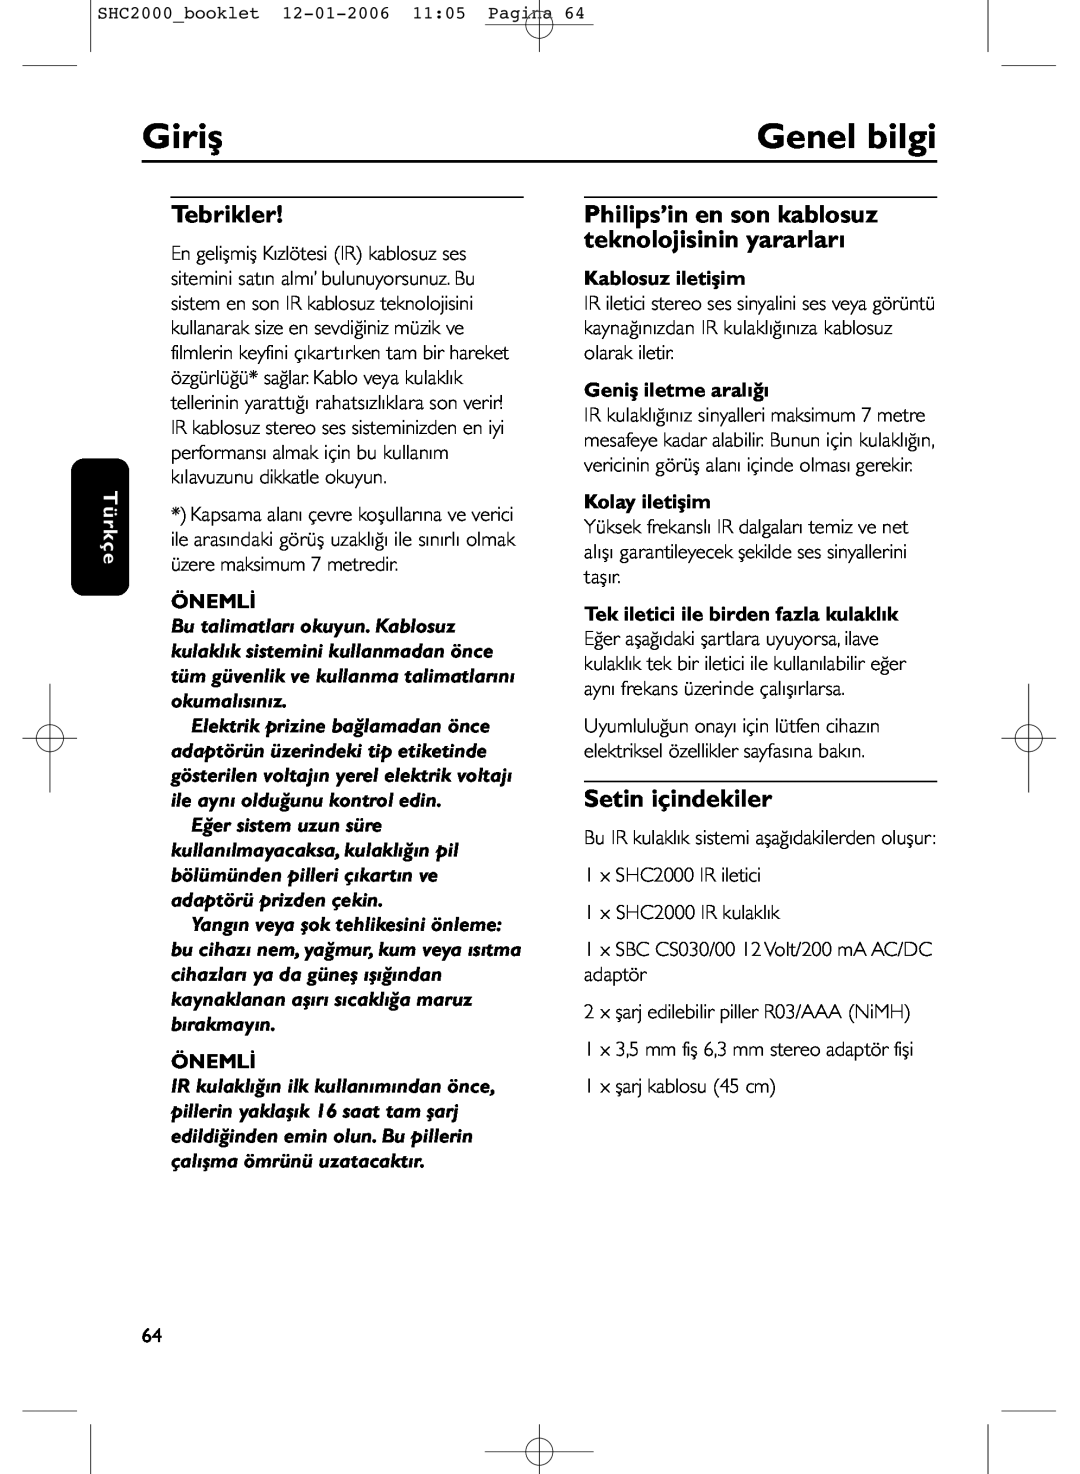 Philips SHC2000 Giriş, Genel bilgi, Tebrikler, Setin içindekiler, Türkçe, Önemli, Kablosuz iletişim, Geniş iletme aralığı 